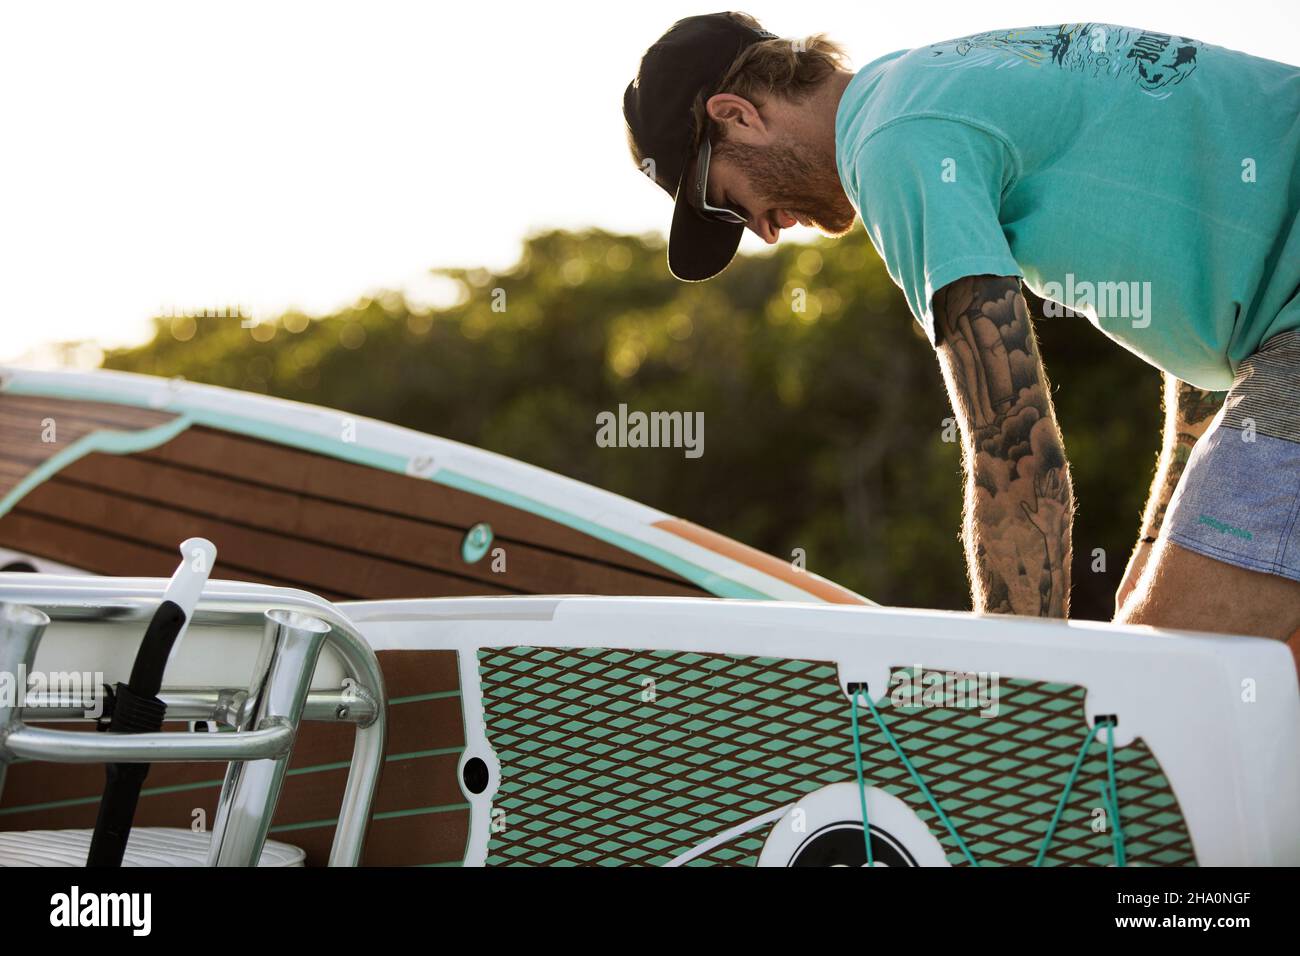 Ein Mann mit Tattoos lädt Paddle Boards auf dem Boot Stockfoto